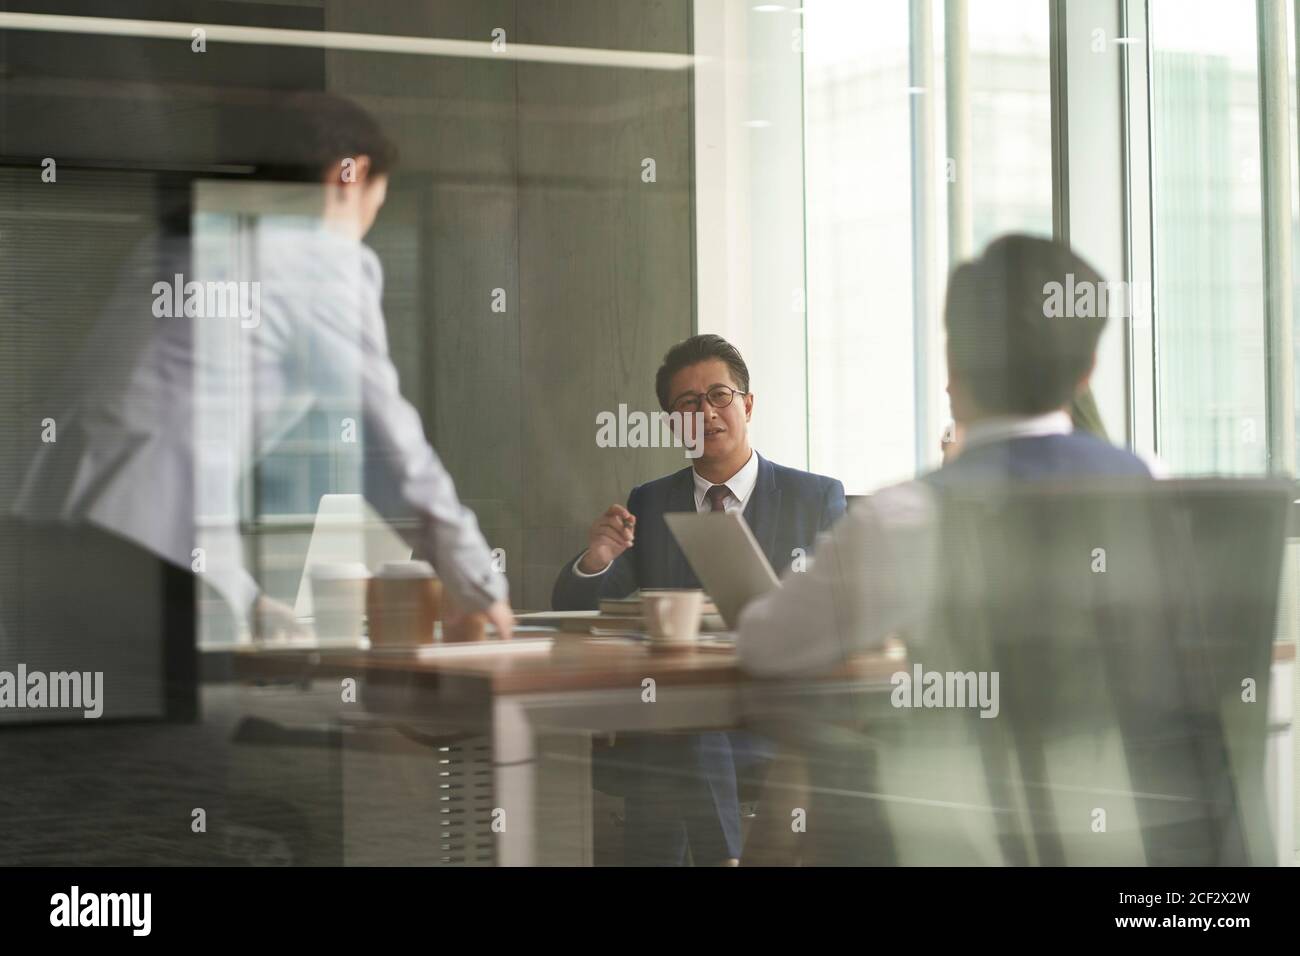 photo à travers le verre d'un groupe de gens d'affaires asiatiques ayant un discussion dans la salle de réunion pendant qu'un jeune stagiaire apporte du café Banque D'Images